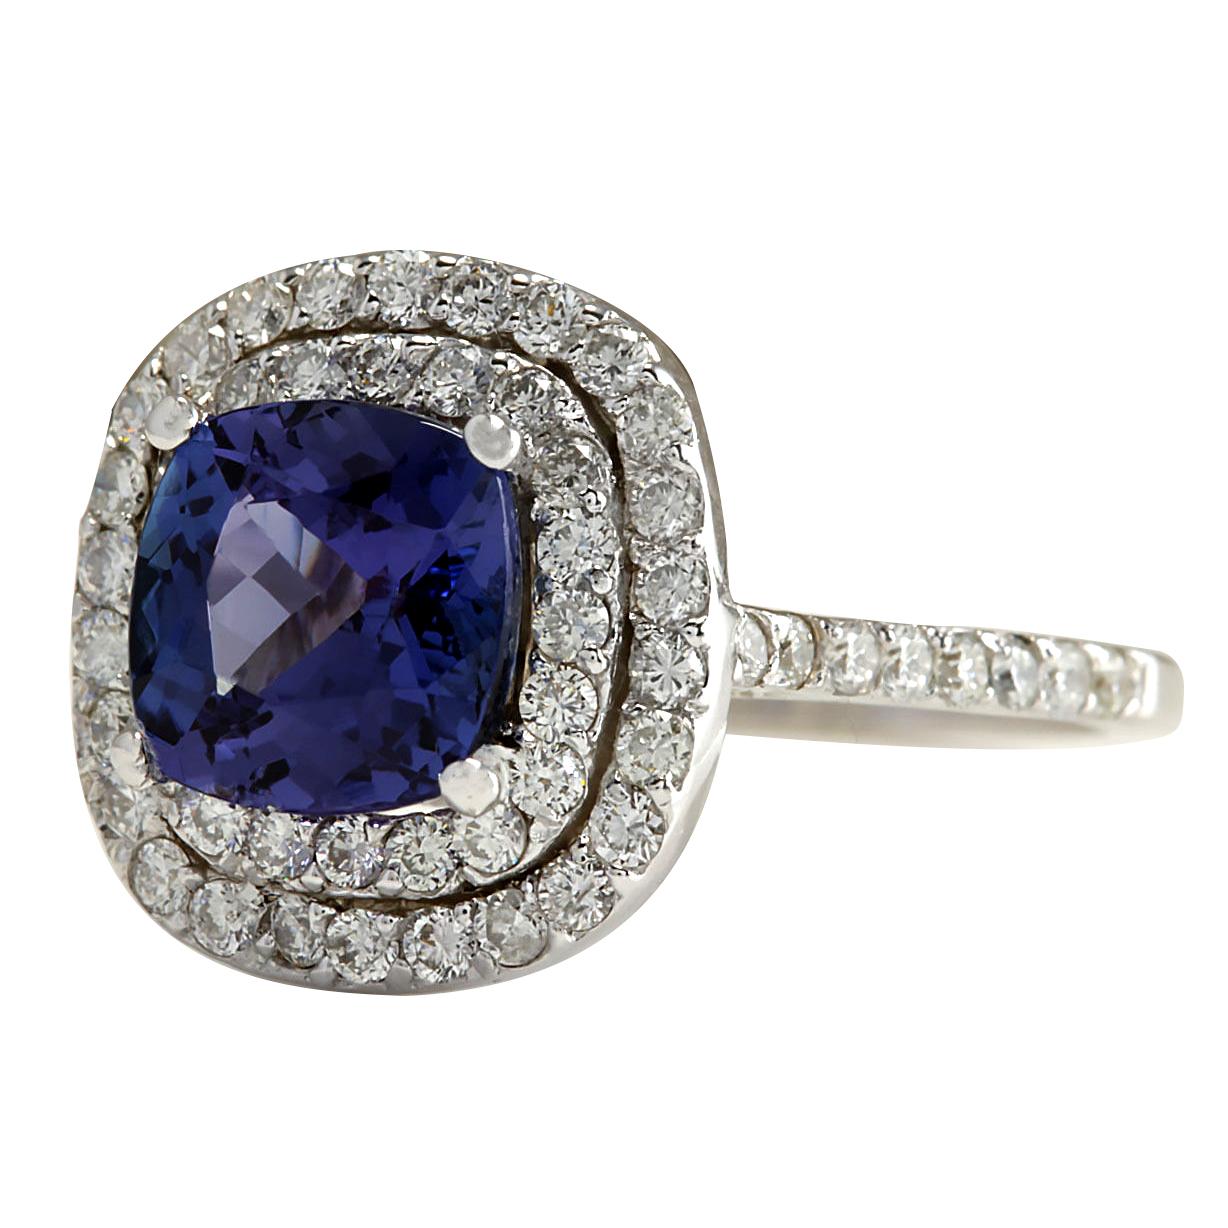 2.95 Carat Natural Tanzanite 14 Karat White Gold Diamond Ring
Stamped: 14K White Gold
Total Ring Weight: 4.0 Grams
Total Natural Tanzanite Weight is 1.97 Carat (Measures: 7.50x7.50 mm)
Color: Blue
Total Natural Diamond Weight is 0.98 Carat
Color: